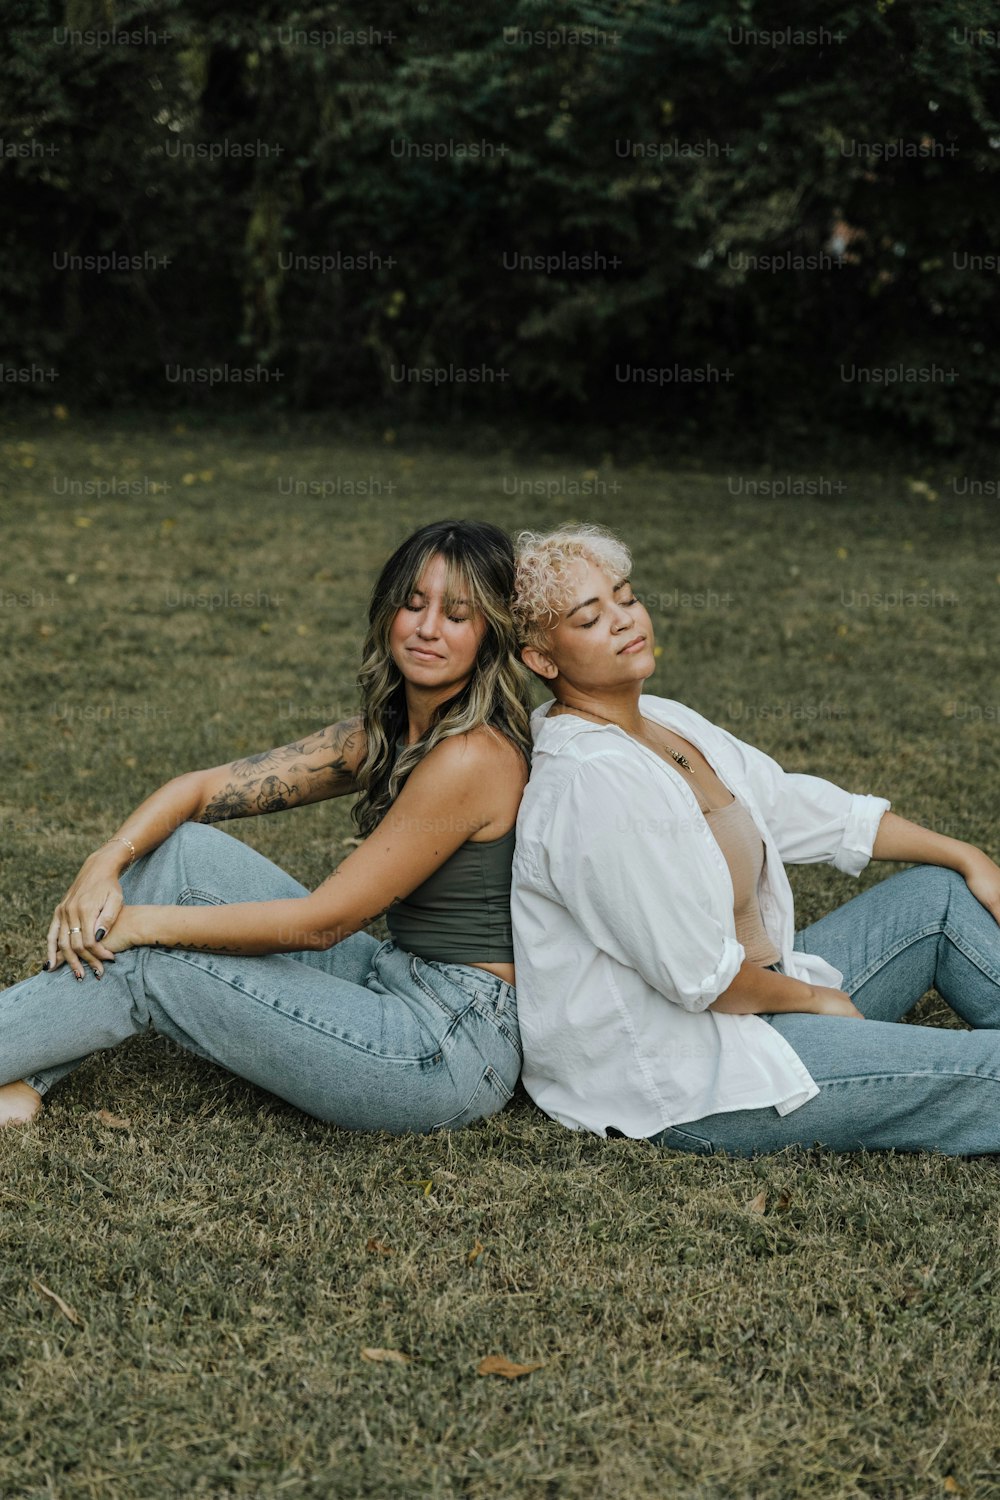 풀밭 위에 앉아 있는 두 명의 여자